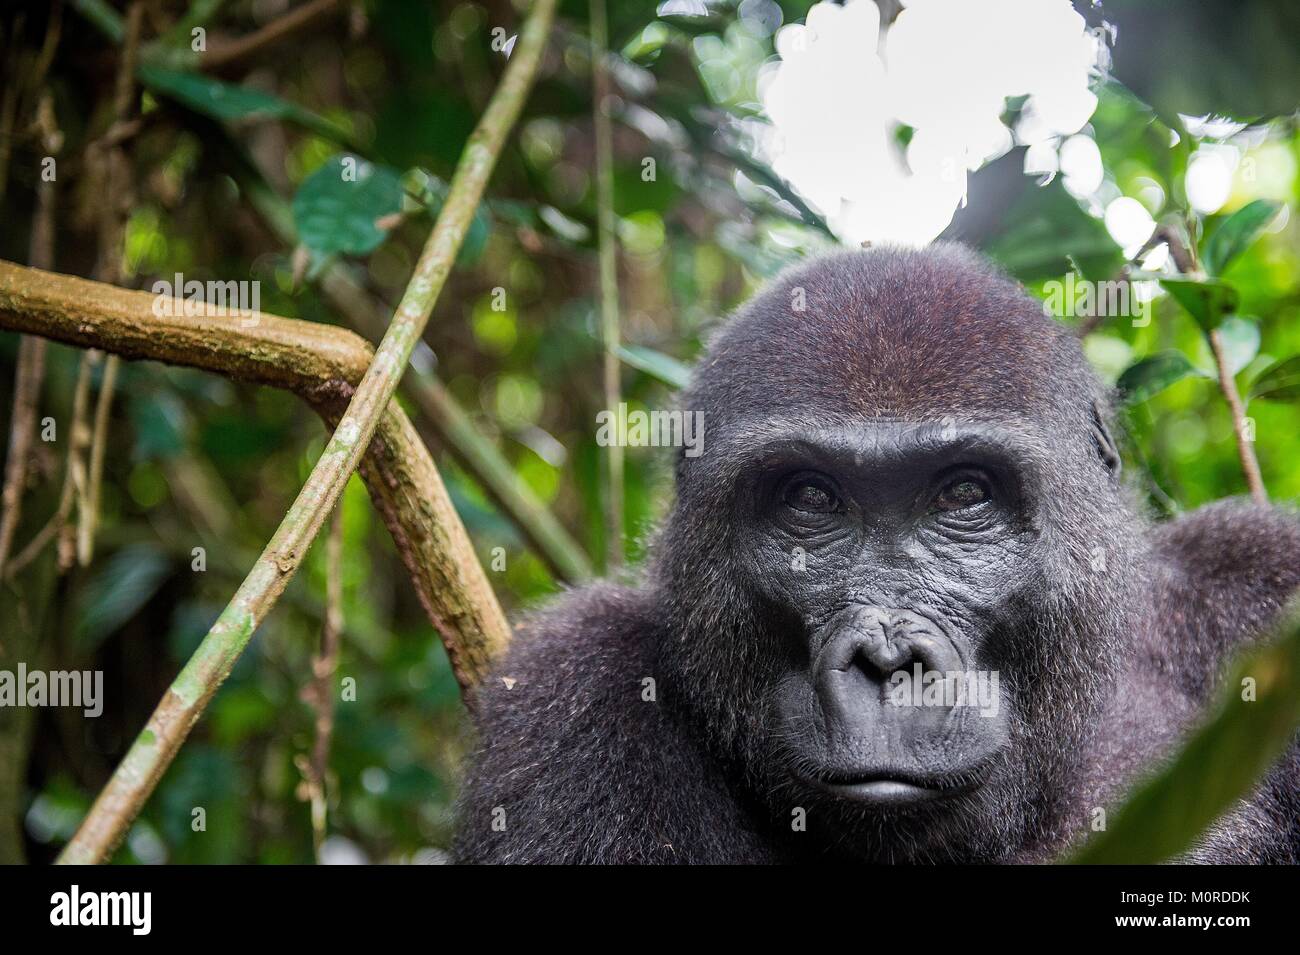 Ritratto di una pianura occidentale (gorilla Gorilla gorilla gorilla) chiudere fino a breve distanza. femmina adulta di un gorilla in un habitat naturale. La giungla di Foto Stock